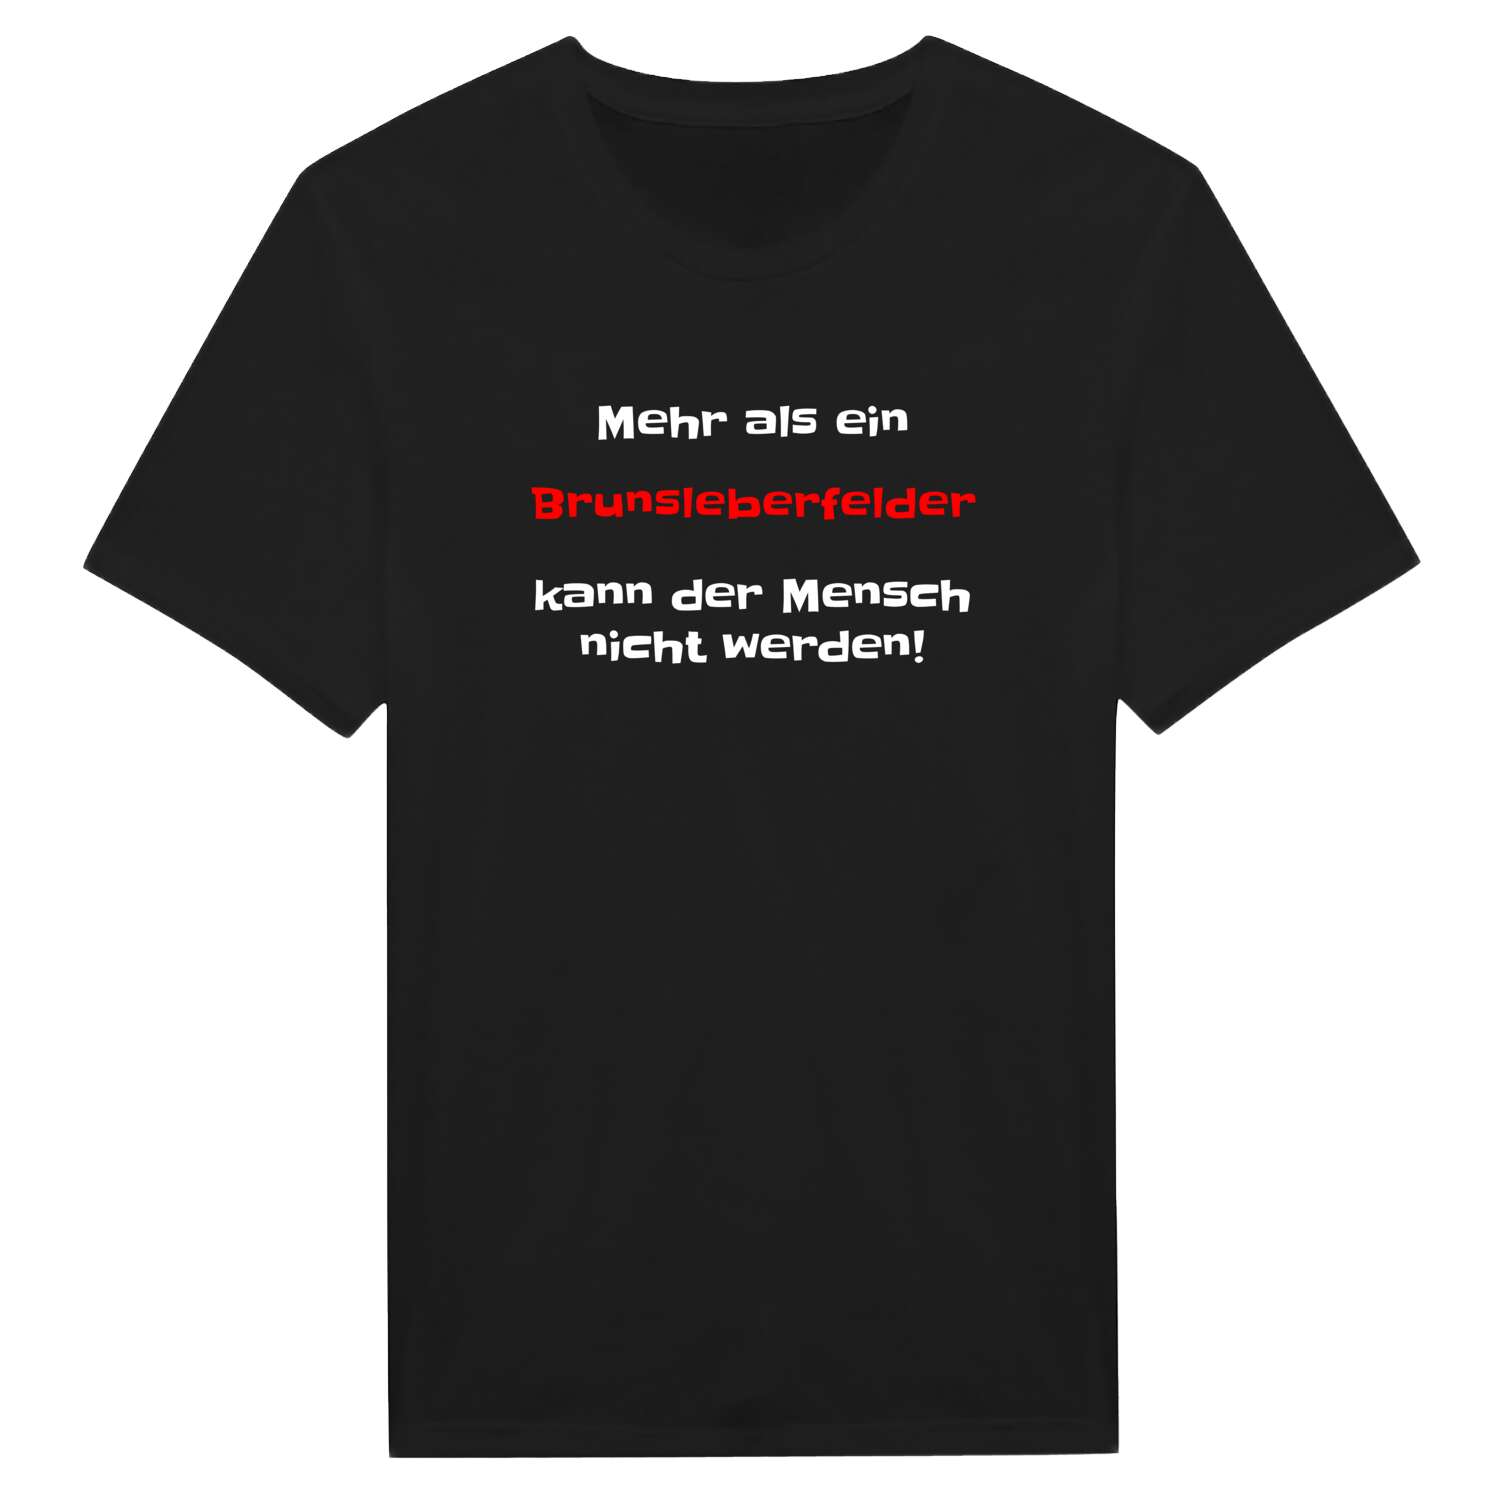 Brunsleberfeld T-Shirt »Mehr als ein«